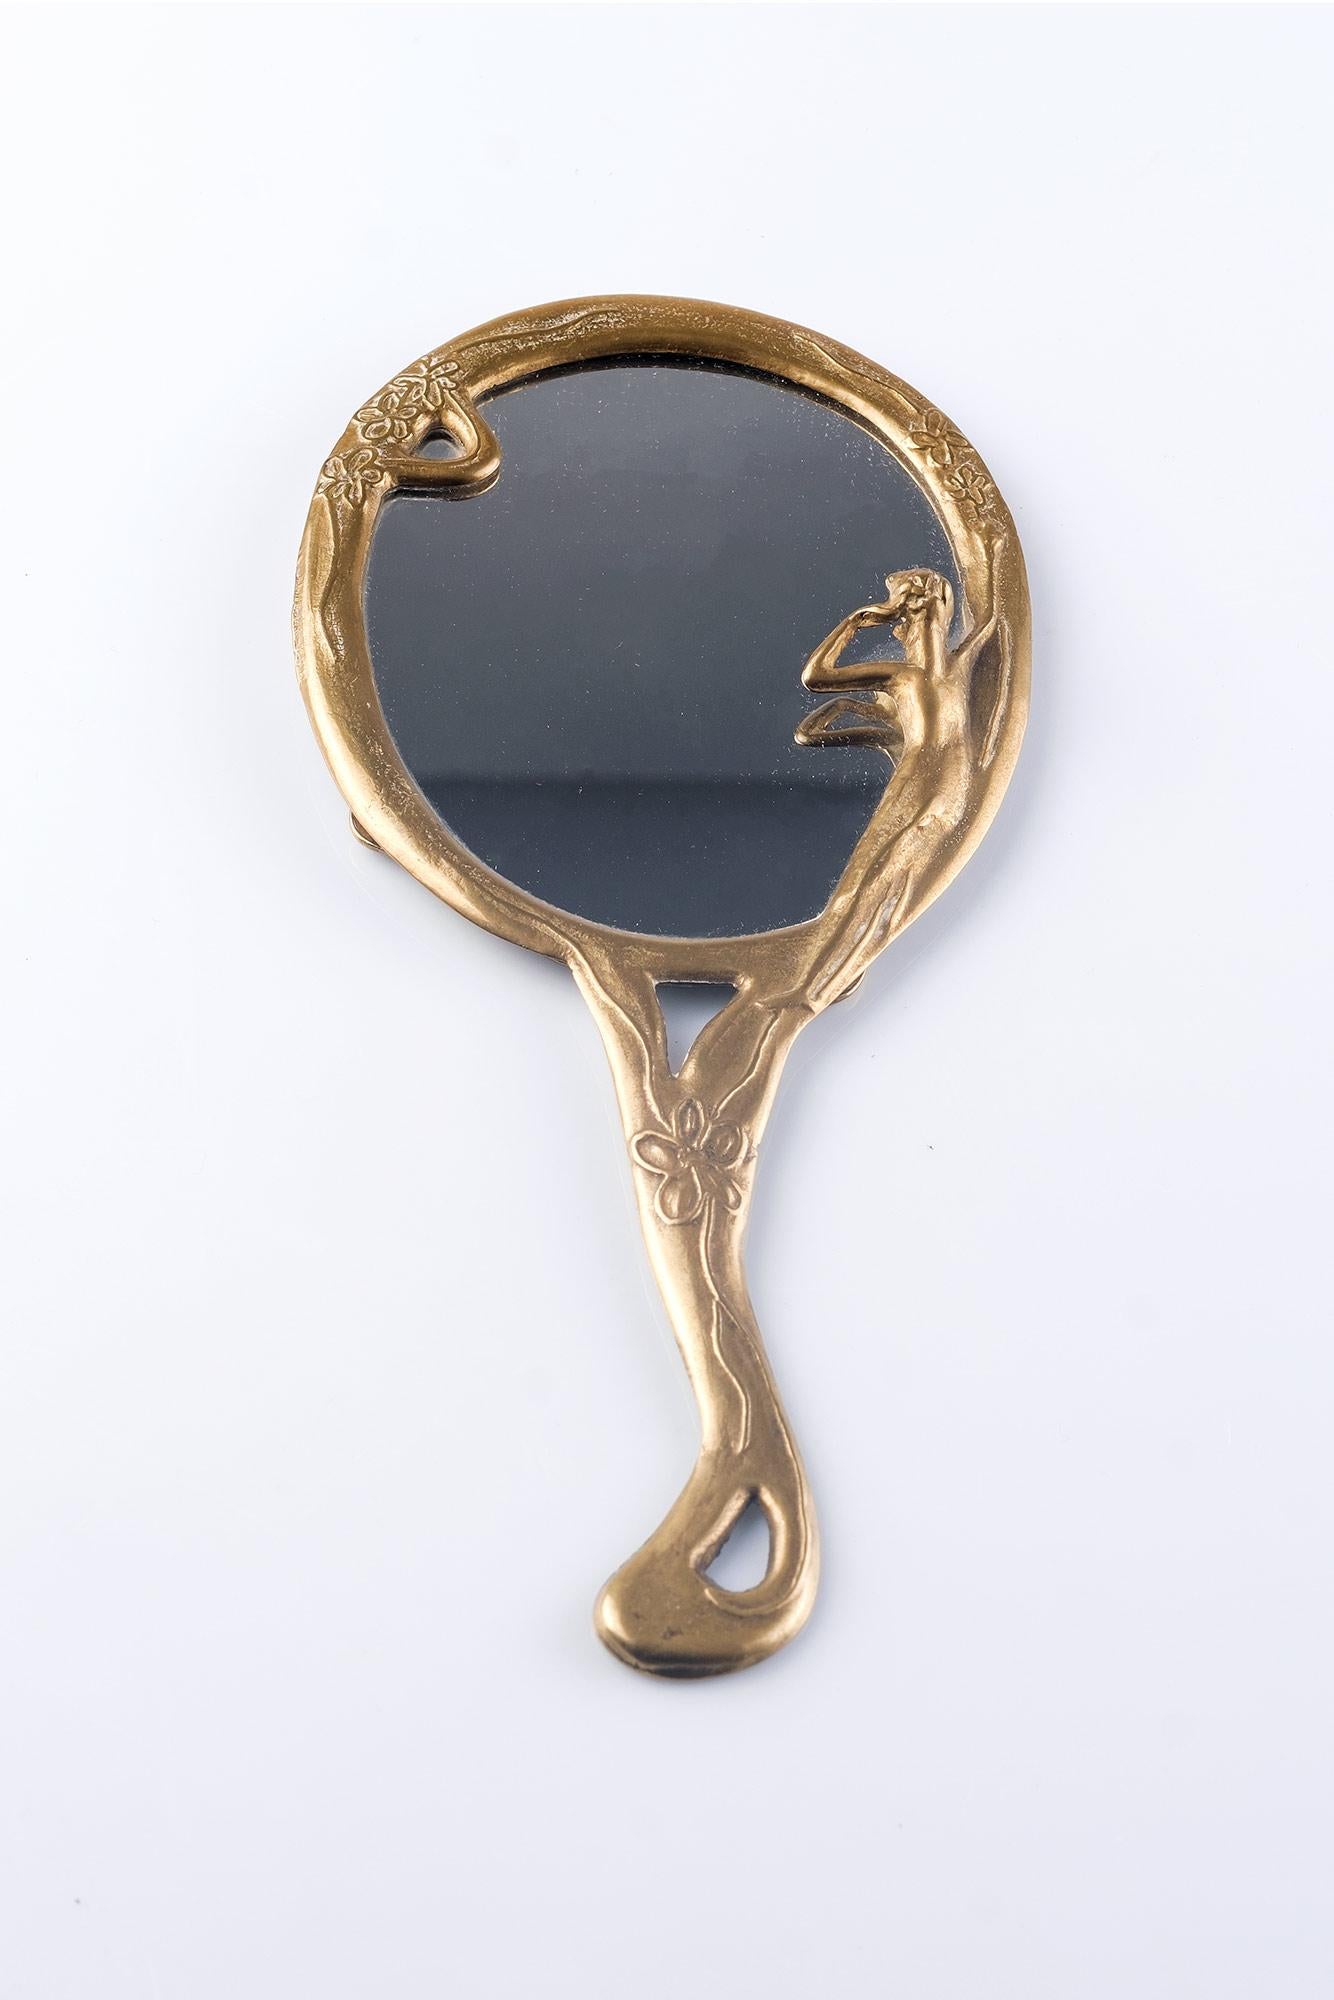 Splendid Hand Mirror in Brass. Art Nouveau, France